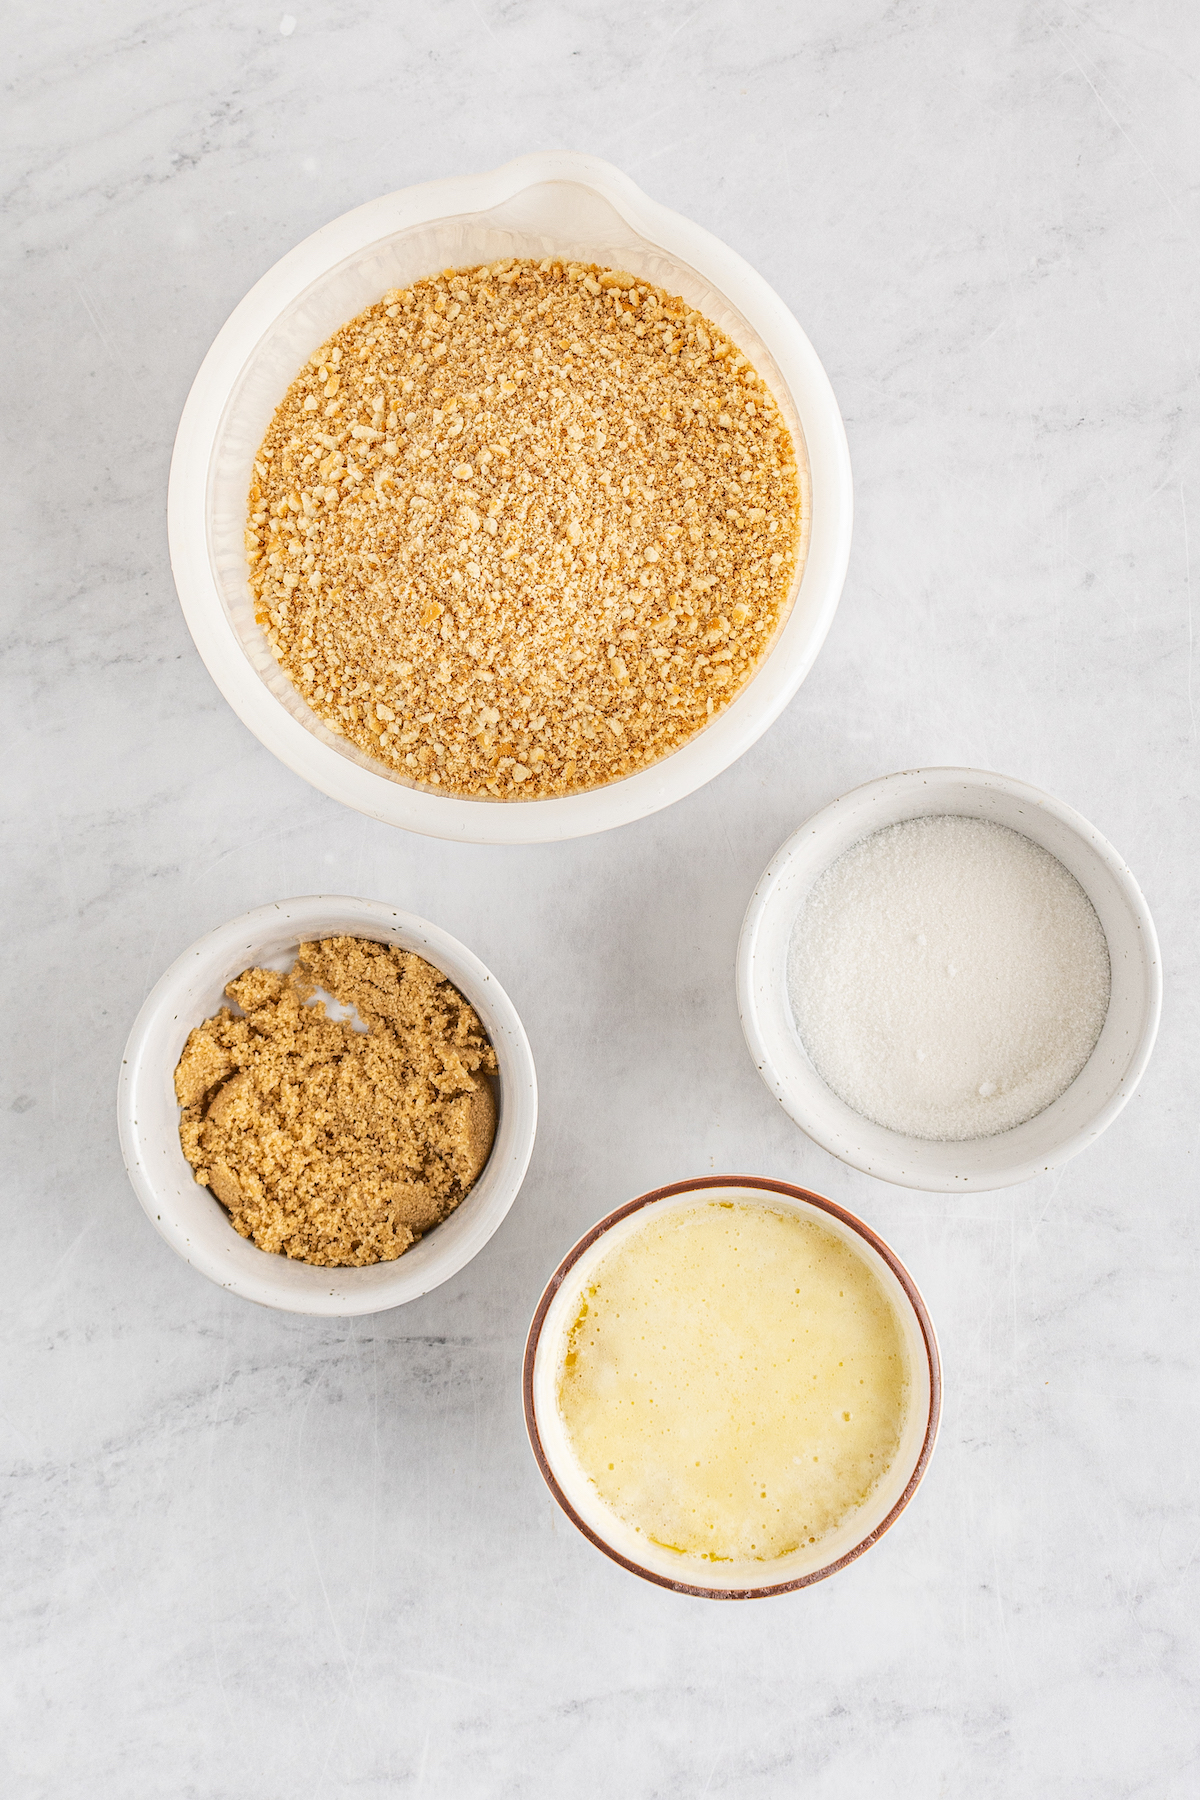 A bowl of vanilla wafer crumbs, a bowl of sugar, a bowl of brown sugar, and a bowl of melted butter